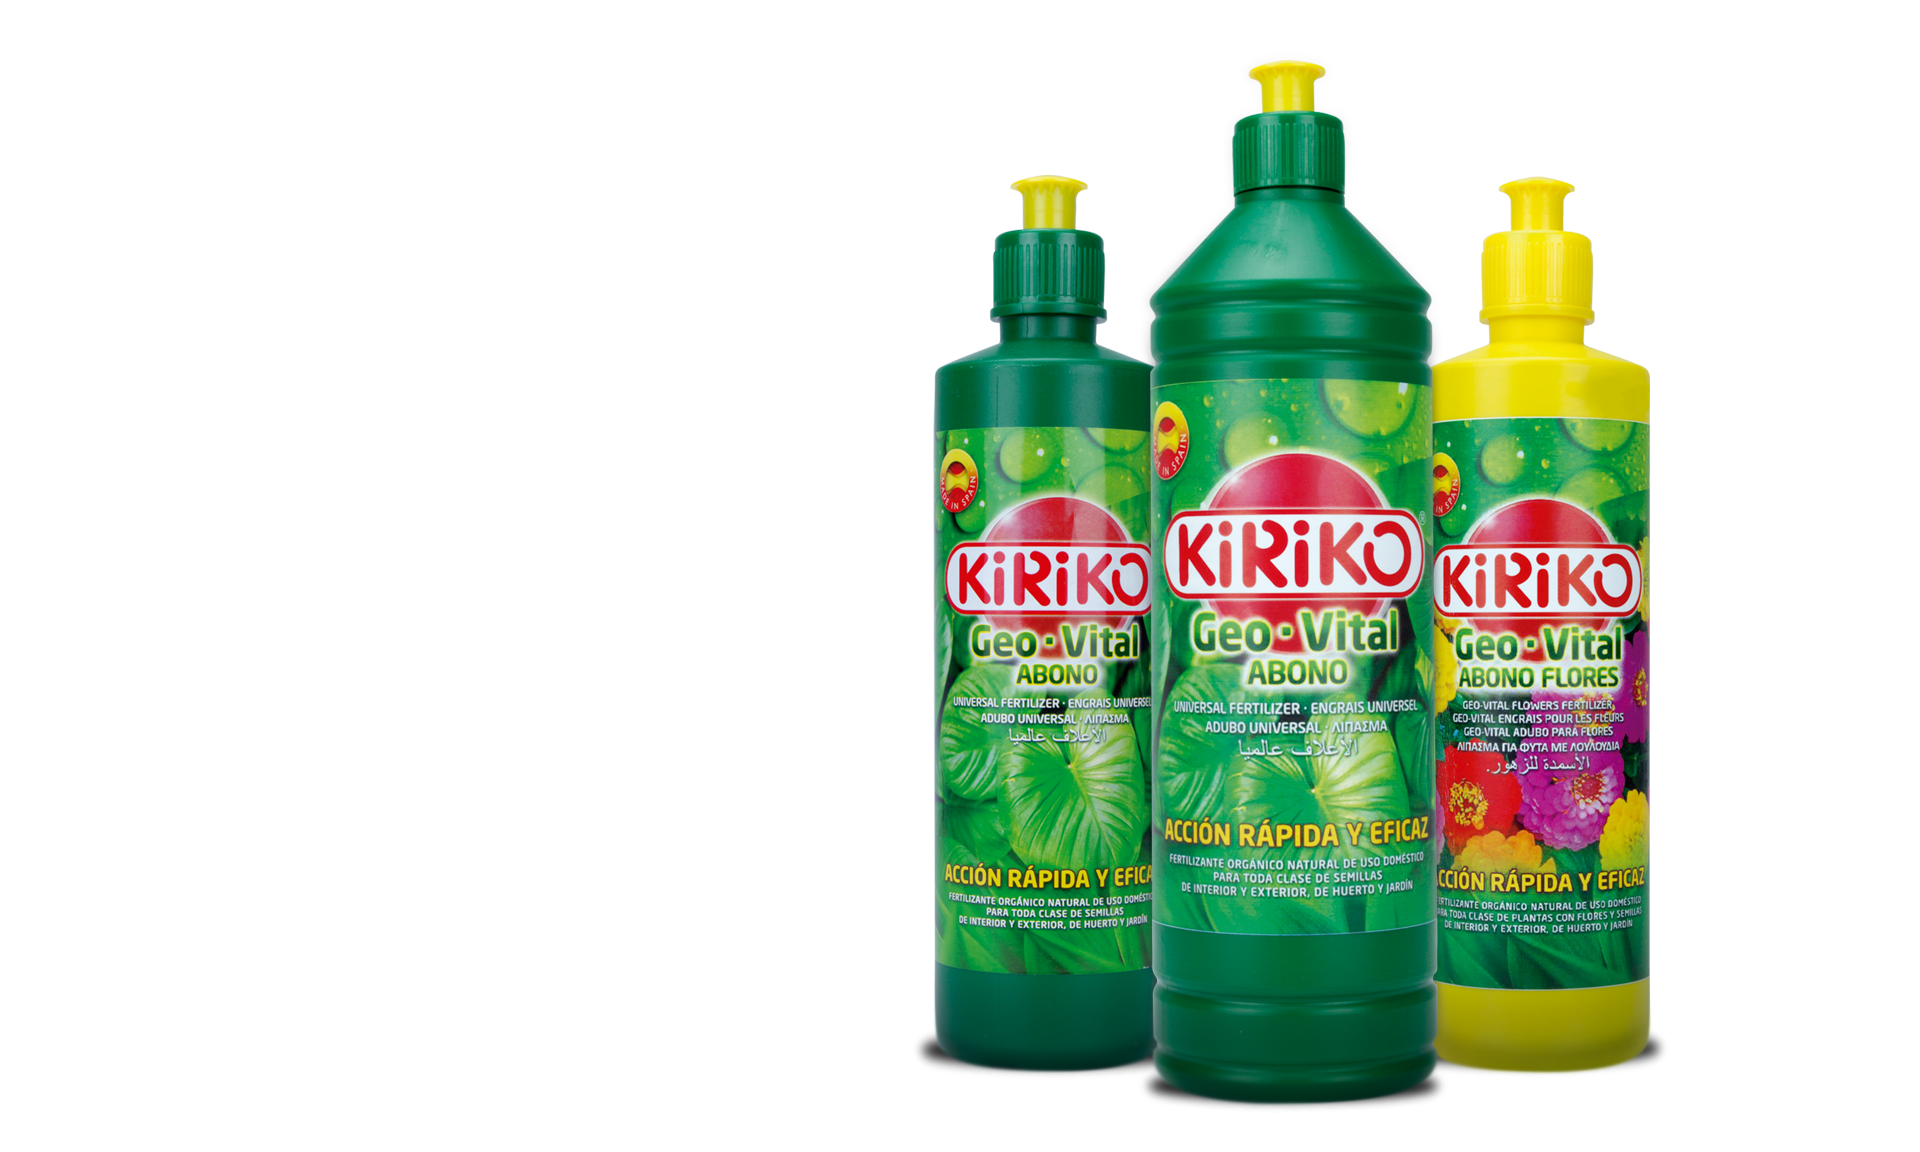 Kiriko: Produits de Nettoyage - Maison - Cosmétiques - Solutions